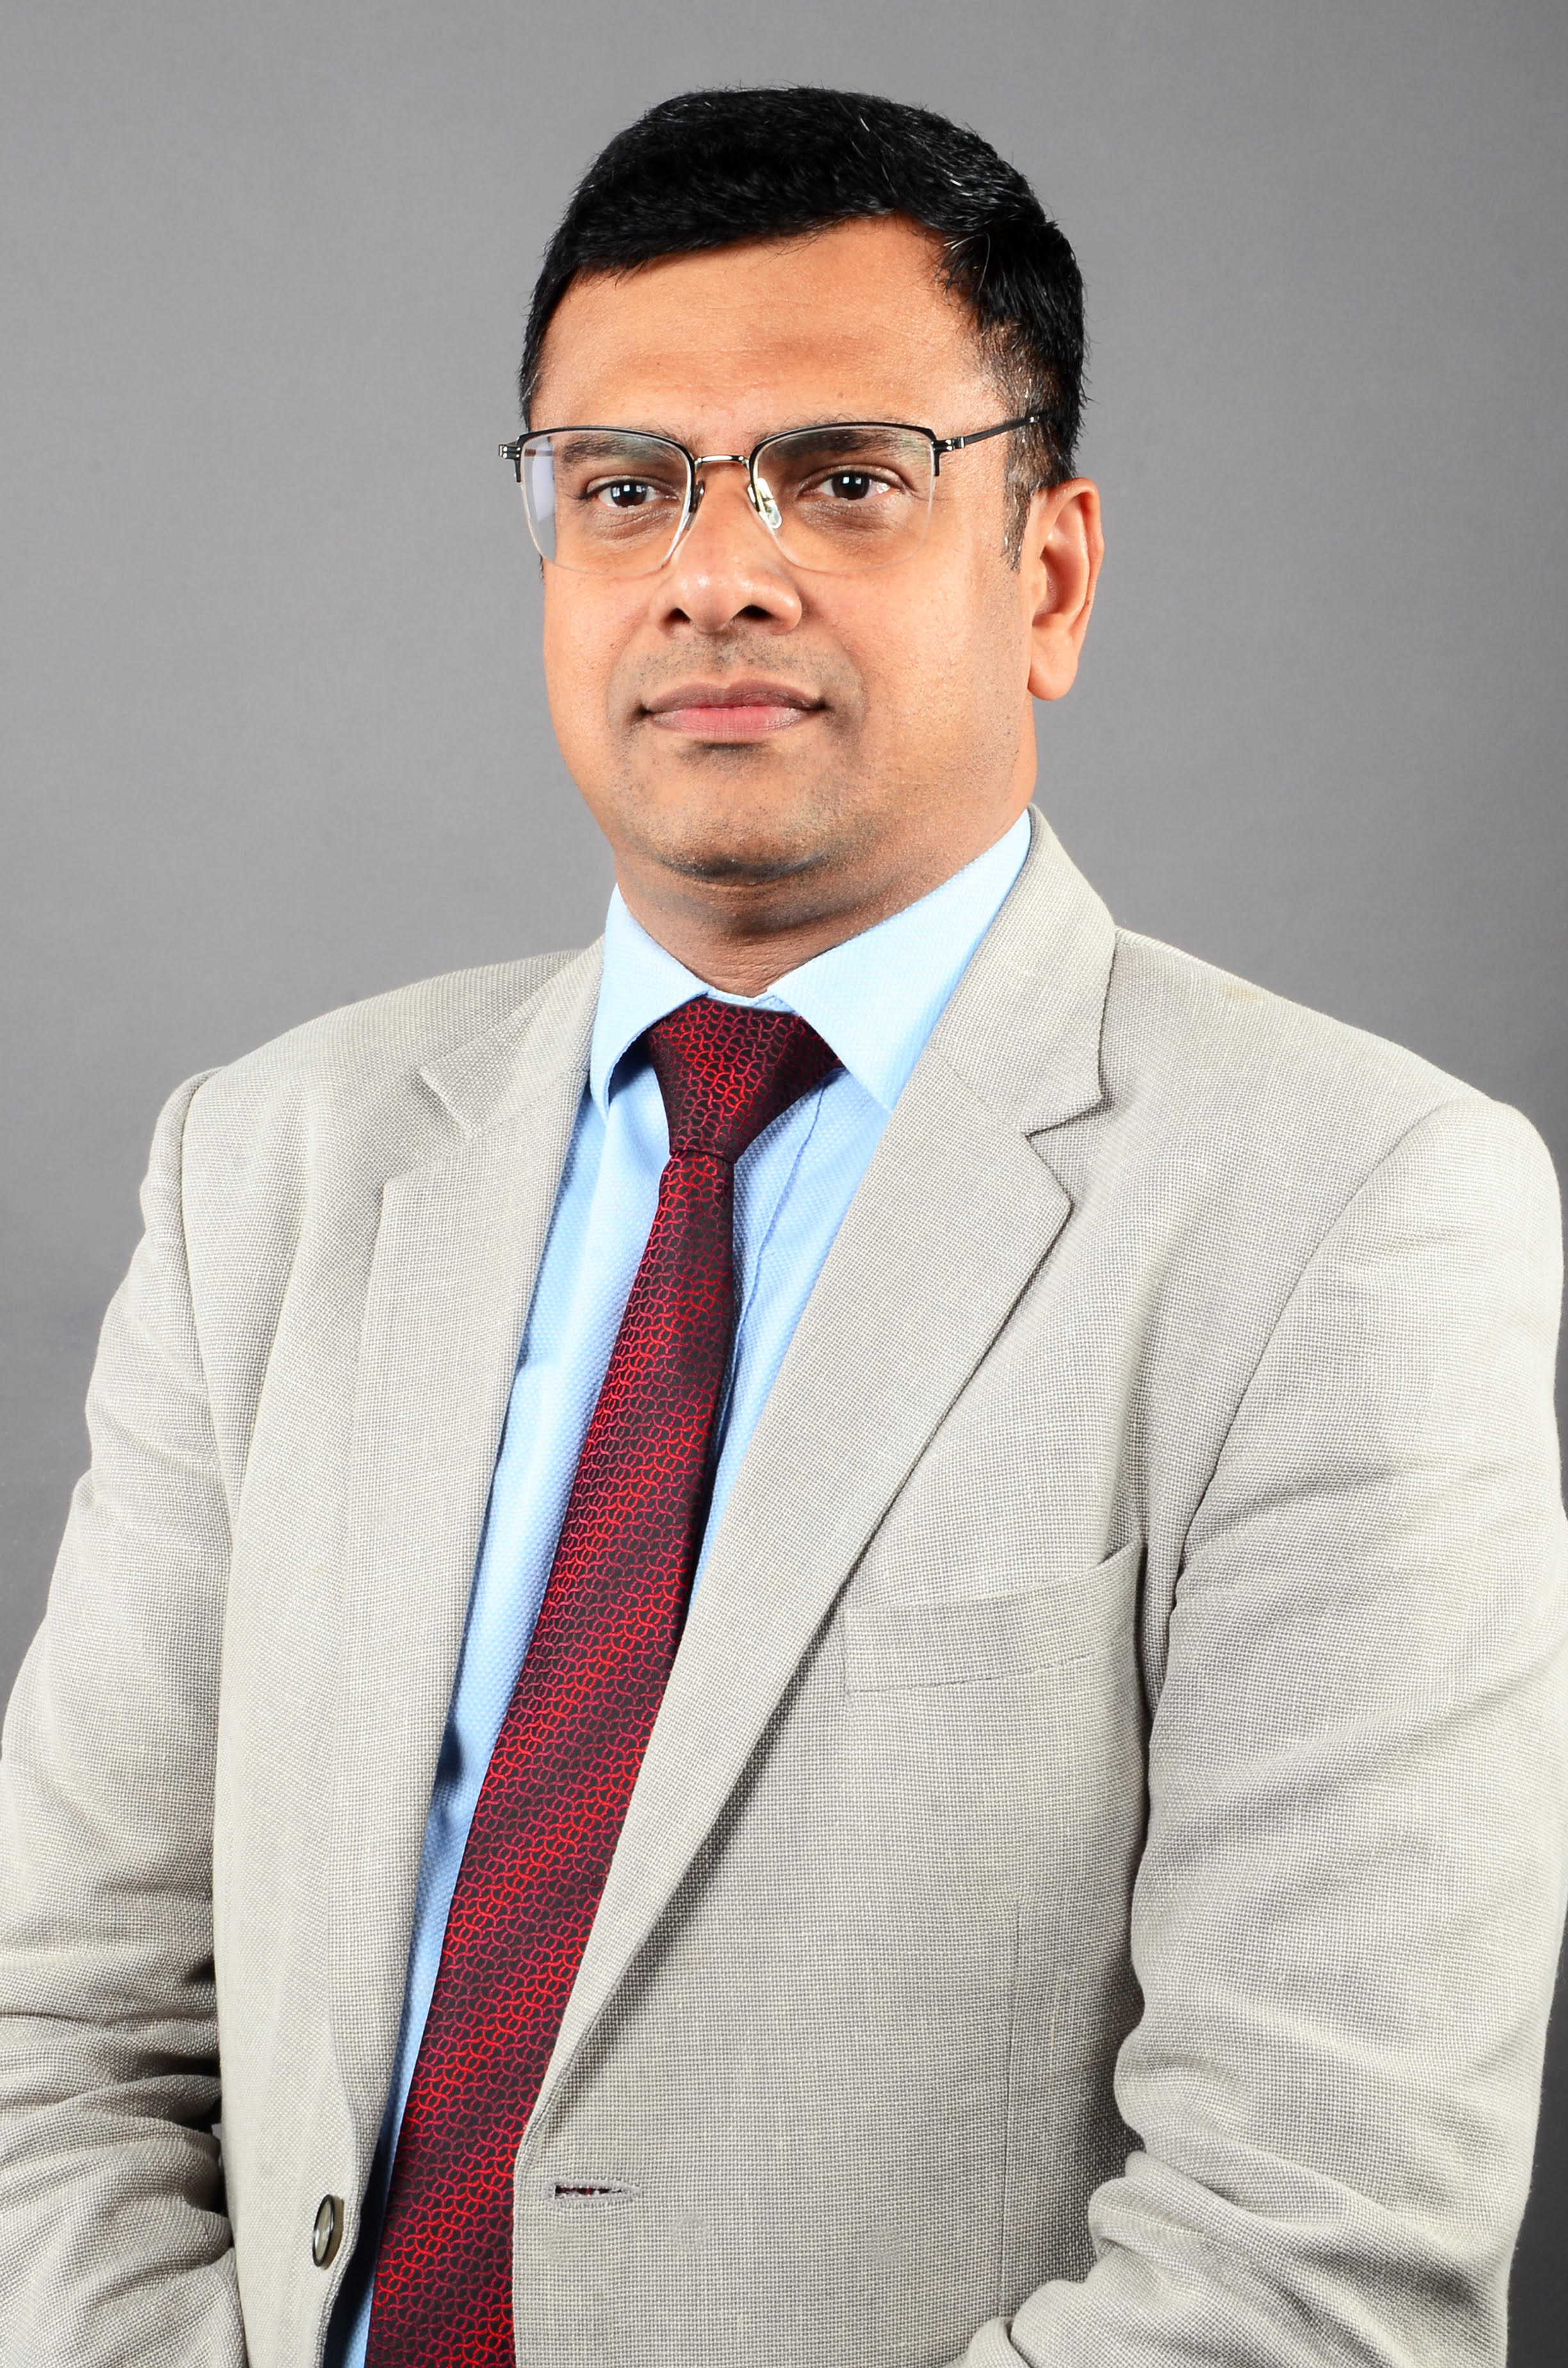 Prof. (Dr.) Amrish Chandra